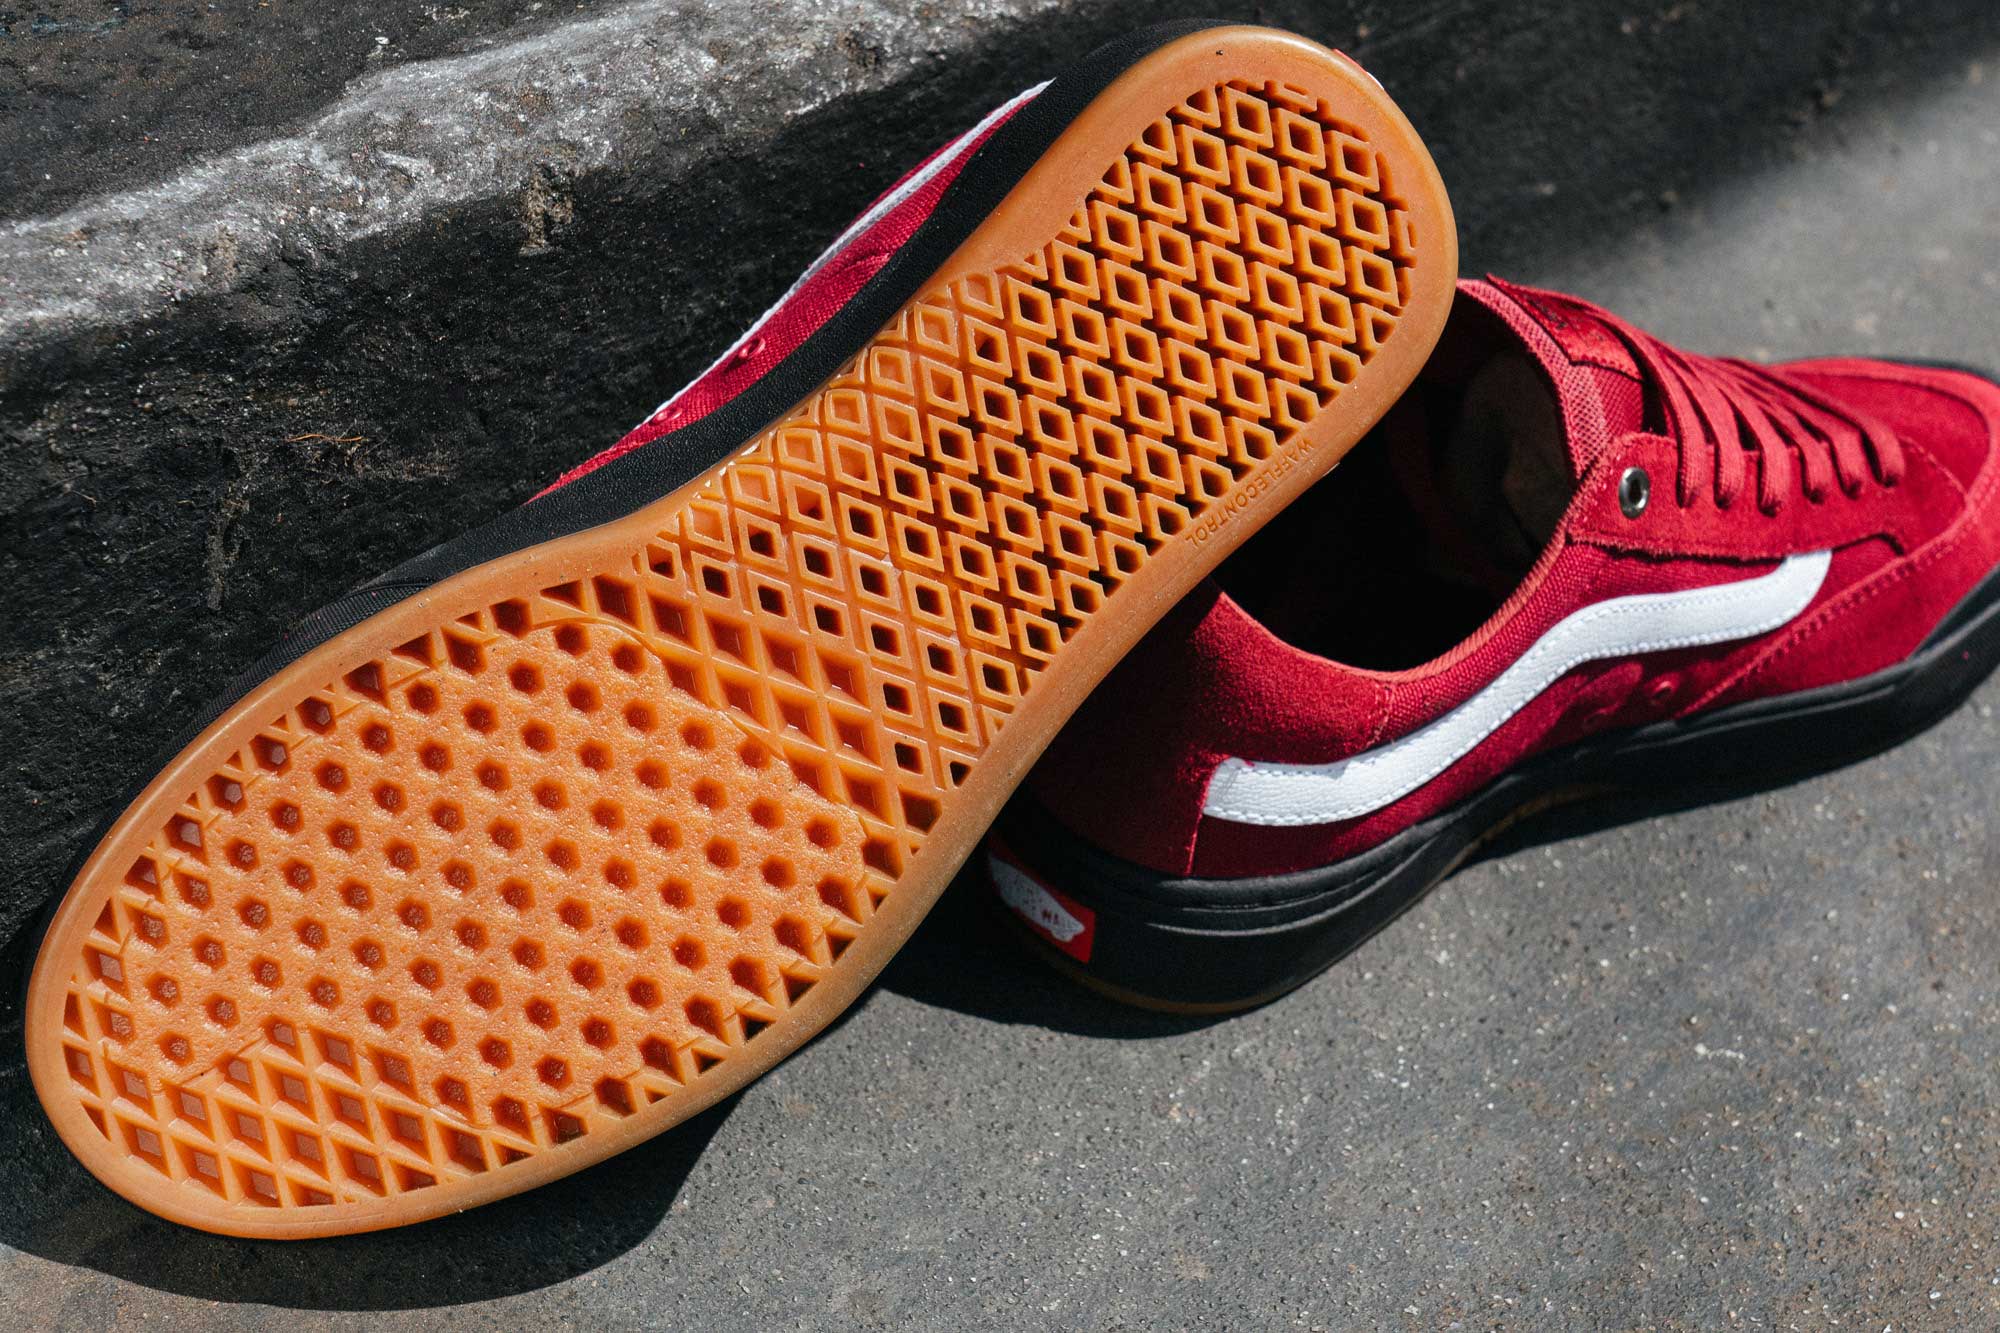 Elijah Berle's New Pro Shoe from Vans 